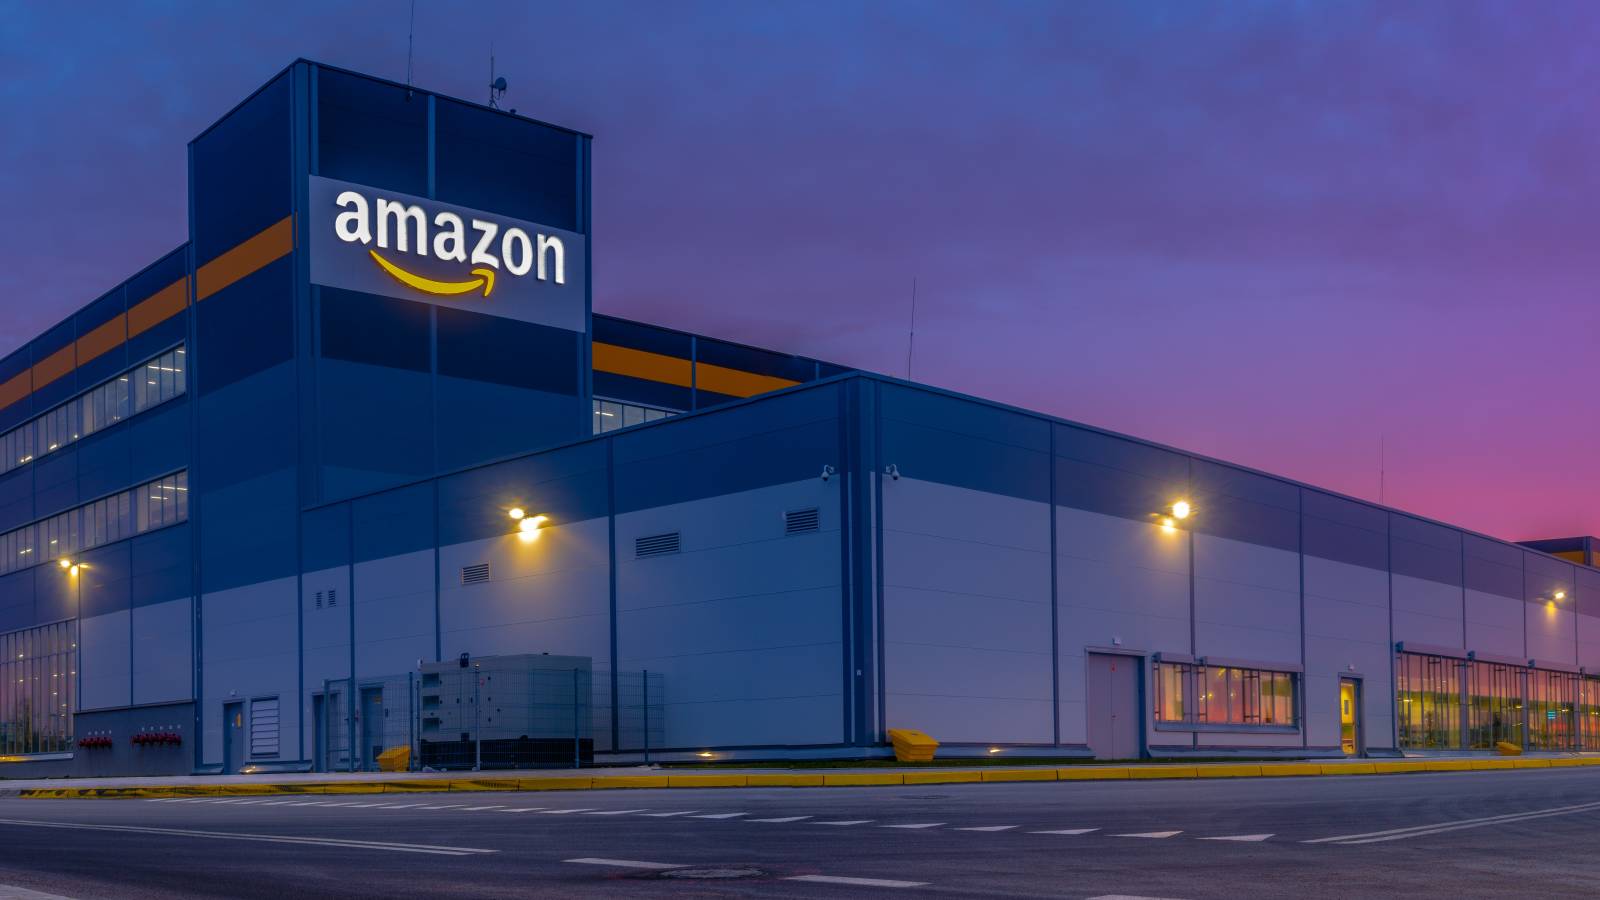 Amazon đã vượt qua Walmart để trở thành nhà bán lẻ giá trị nhất ở Mỹ nhưng Walmart vẫn đang thống trị toàn cầu